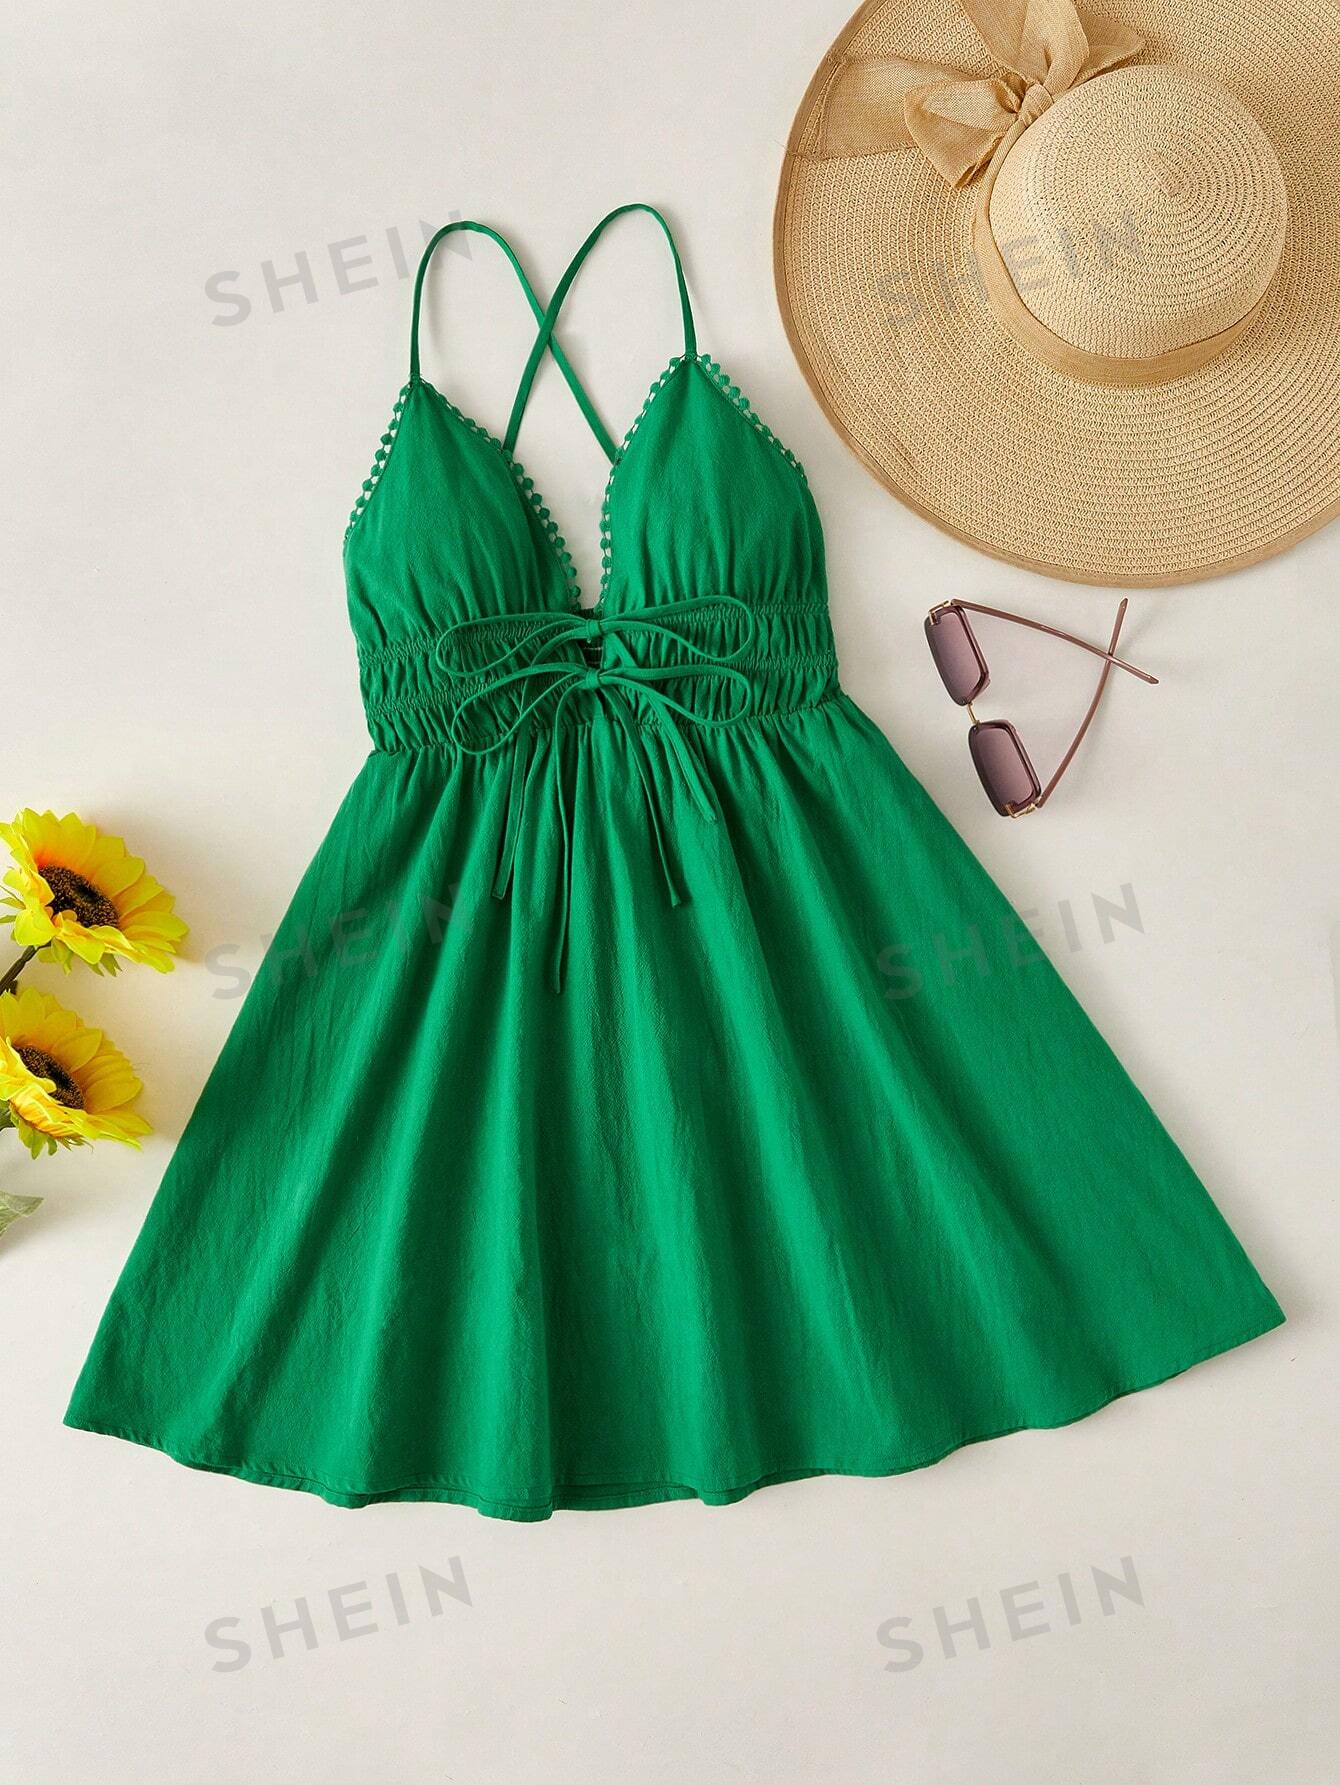 SHEIN WYWH Женское однотонное платье на тонких бретельках с завязками на талии, зеленый